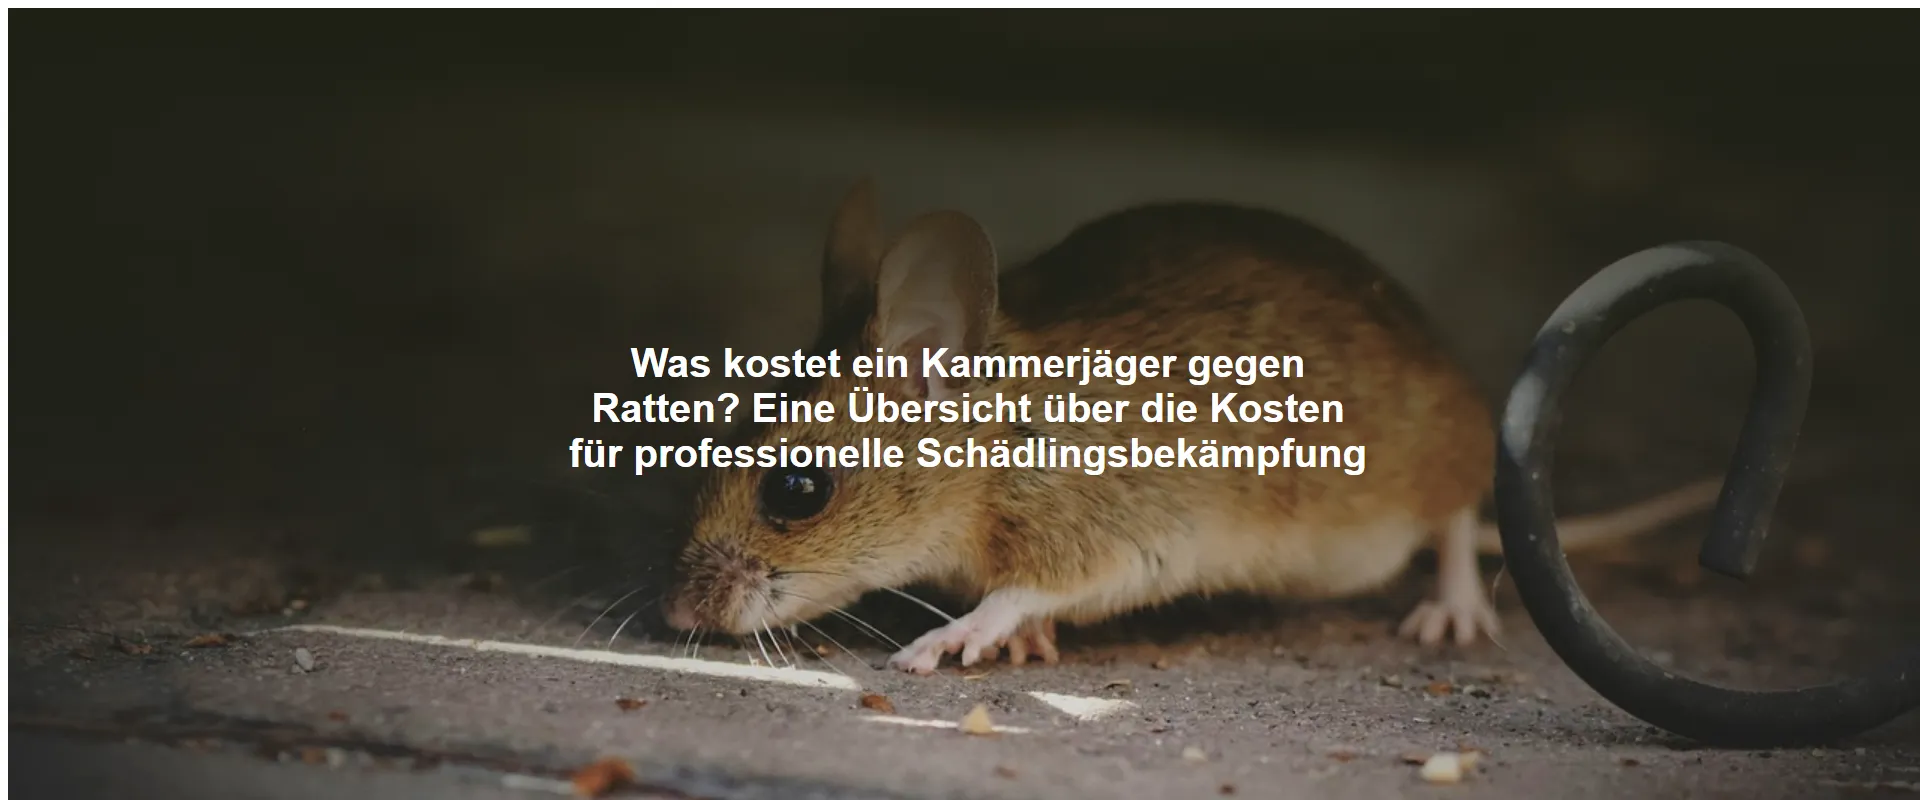 Was kostet ein Kammerjäger gegen Ratten? Eine Übersicht über die Kosten für professionelle Schädlingsbekämpfung